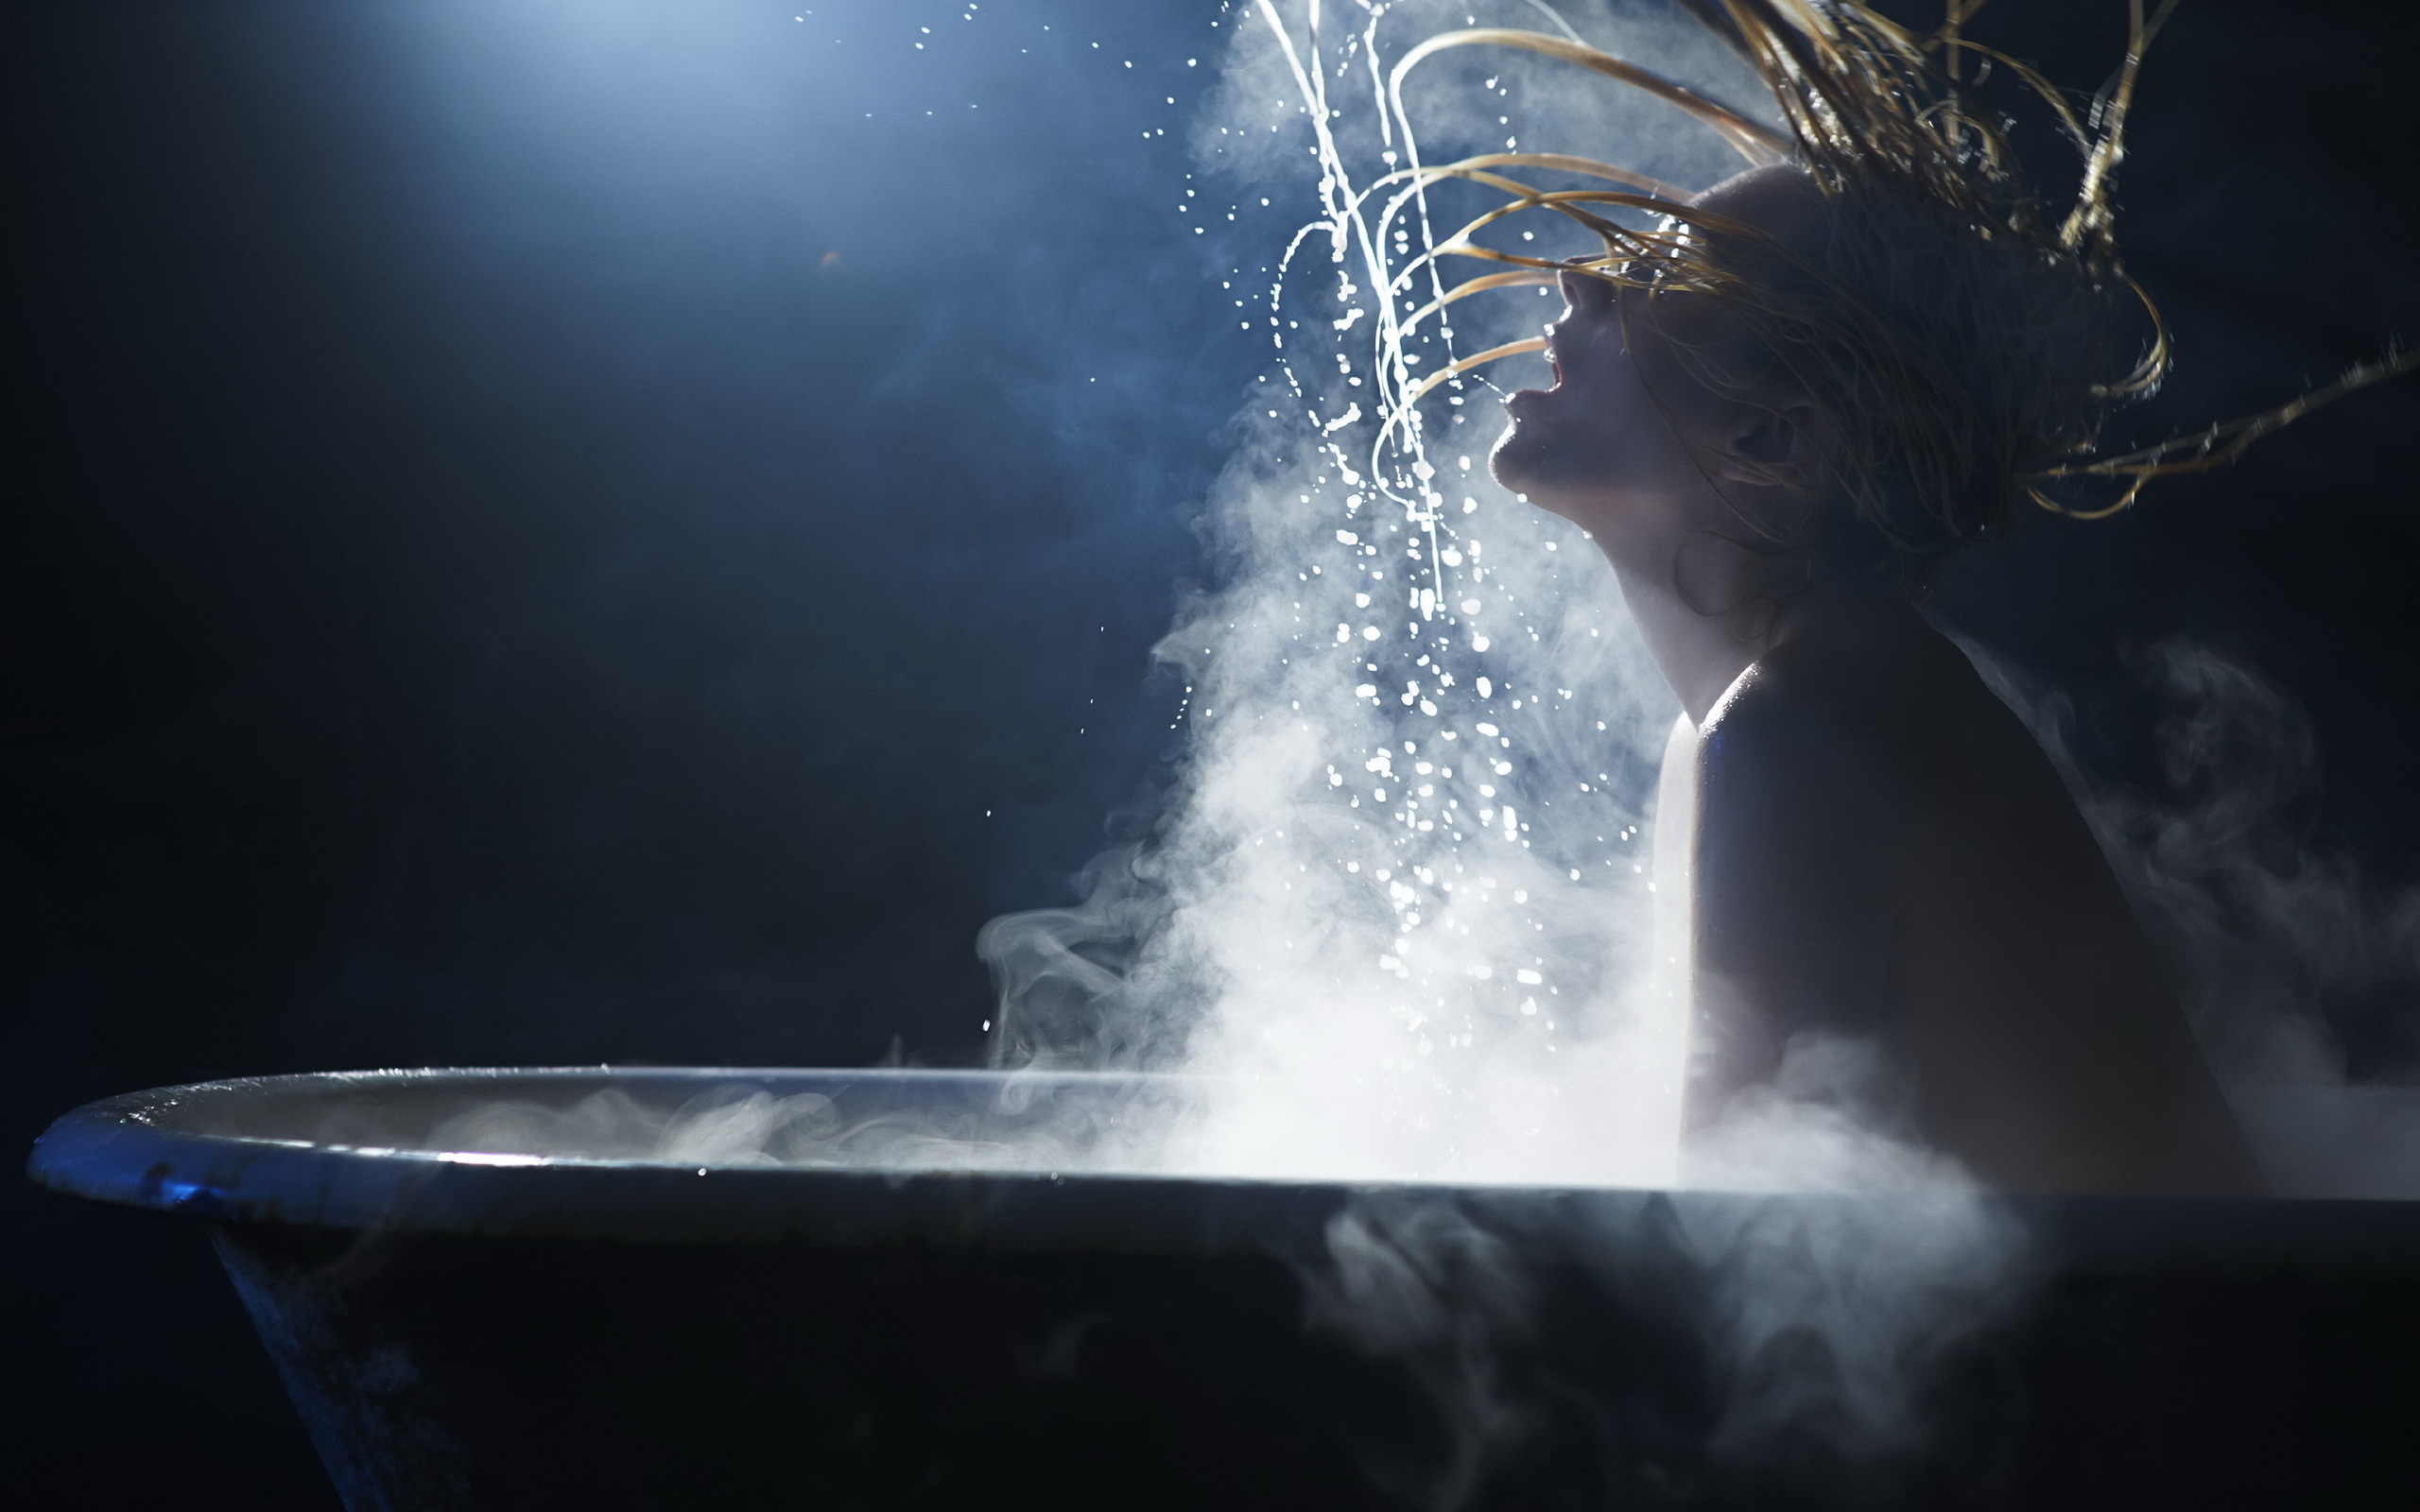 Горячая вода волос. Девушка и струя воды. Девушка под струей воды. Горячие ванны с паром. Девушка в брызгах воды.